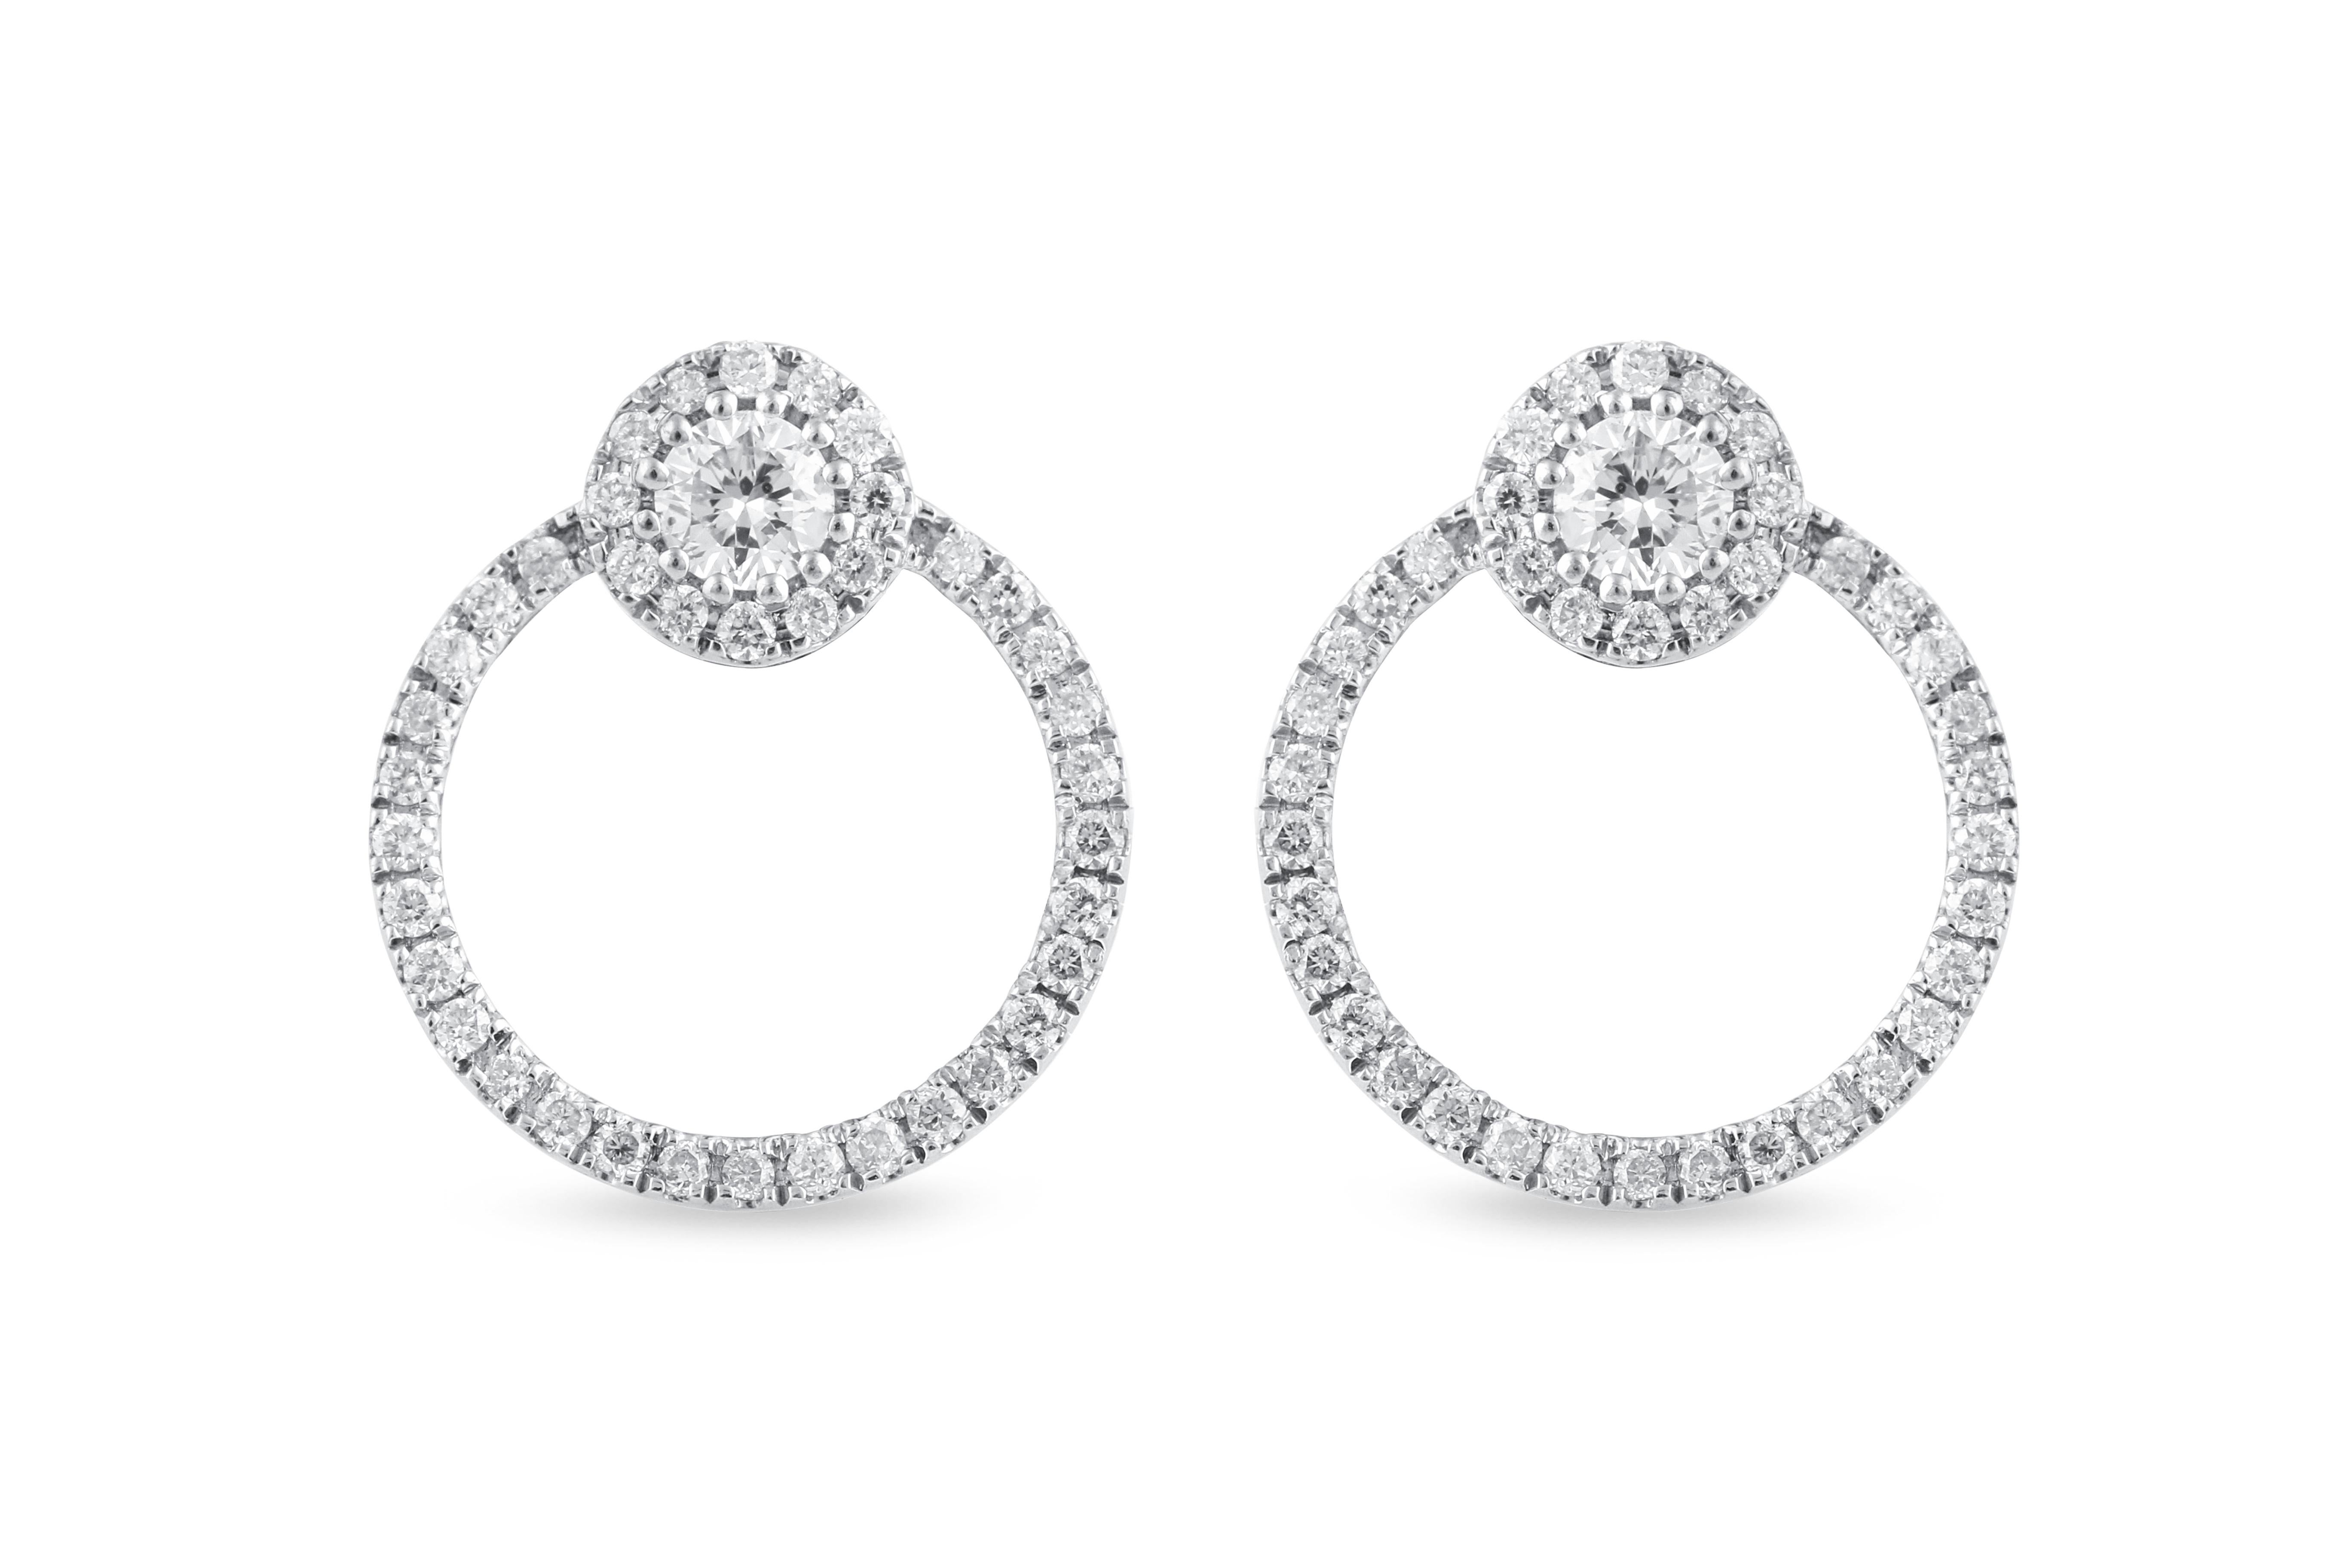 Unsere wunderschönen Diamantohrringe sind in die erstaunlichsten Designs eingefasst, die von modernen Schmuckstücken bis hin zu faszinierenden Klassikern reichen, und sie werden sicherlich die Romantik zwischen Ihnen und Ihrem Ehepartner wieder